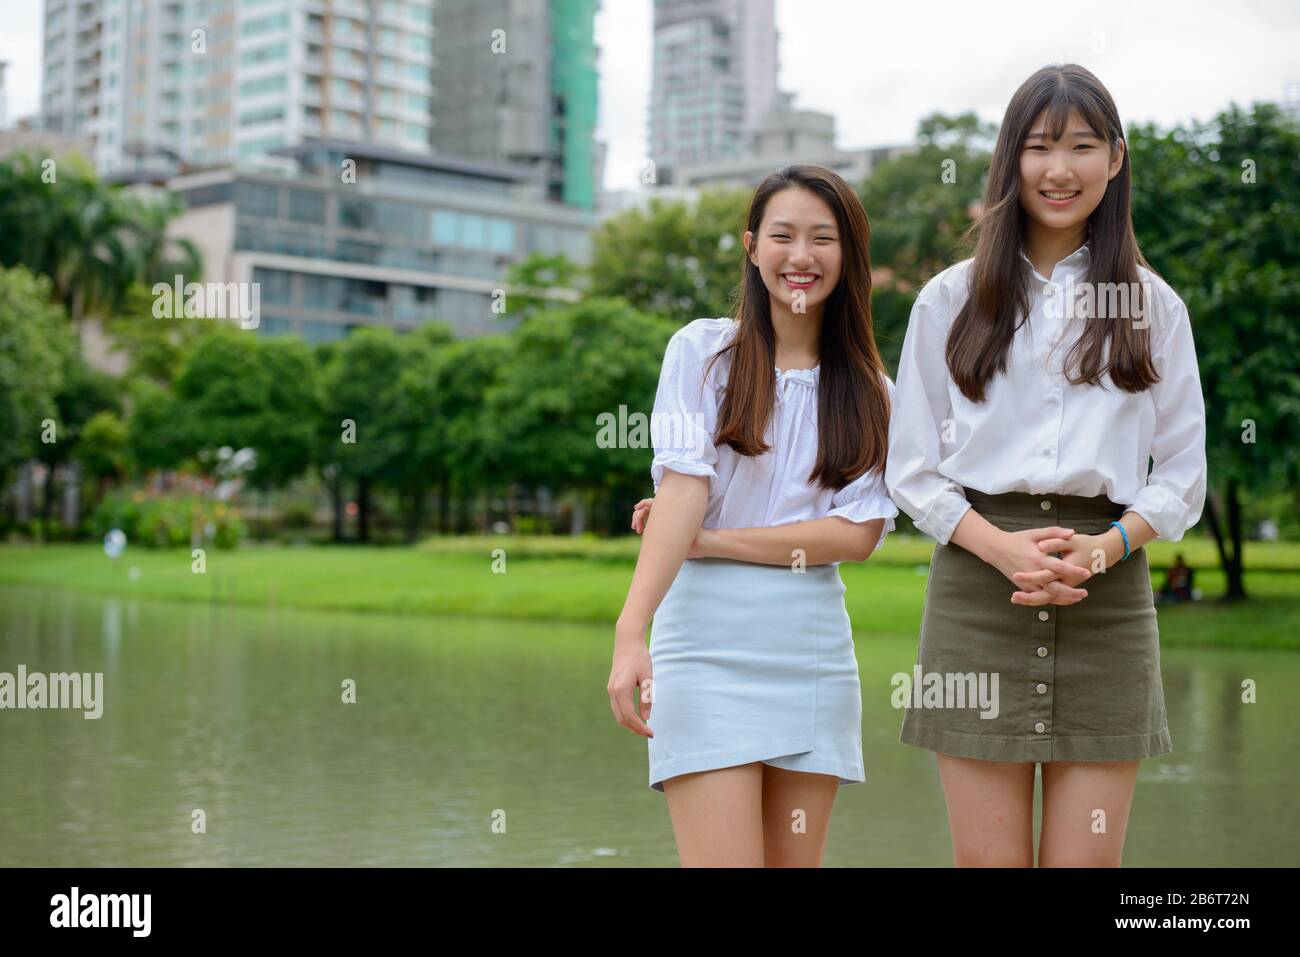 Zwei glückliche junge, schöne asiatische Teenager-Mädchen, die zusammen Spaß am Park haben Stockfoto